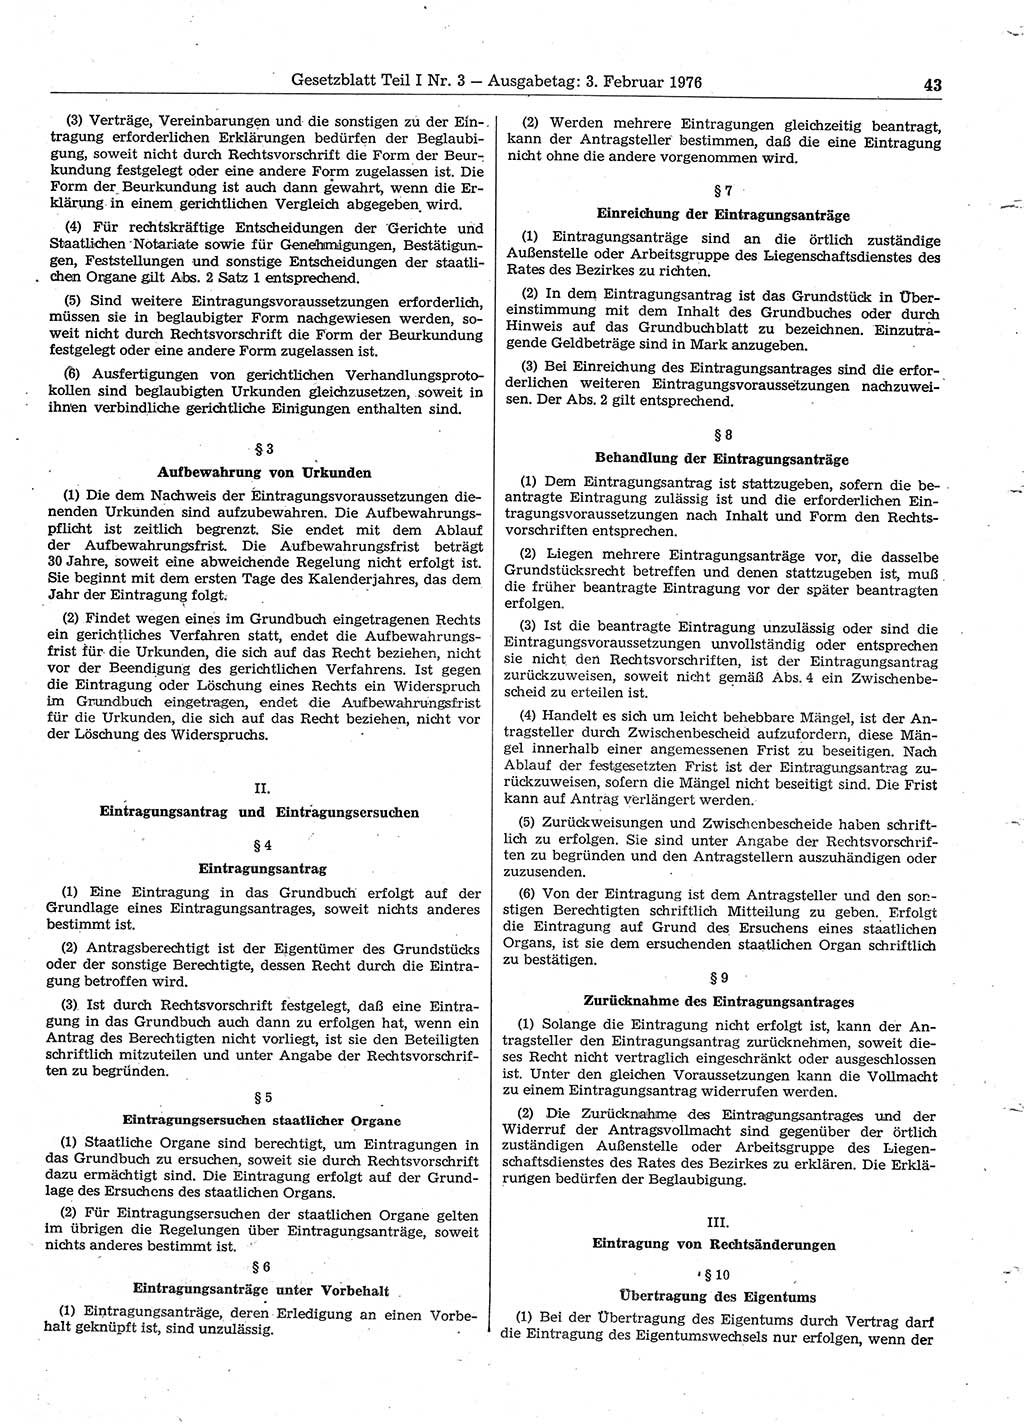 Gesetzblatt (GBl.) der Deutschen Demokratischen Republik (DDR) Teil Ⅰ 1976, Seite 43 (GBl. DDR Ⅰ 1976, S. 43)